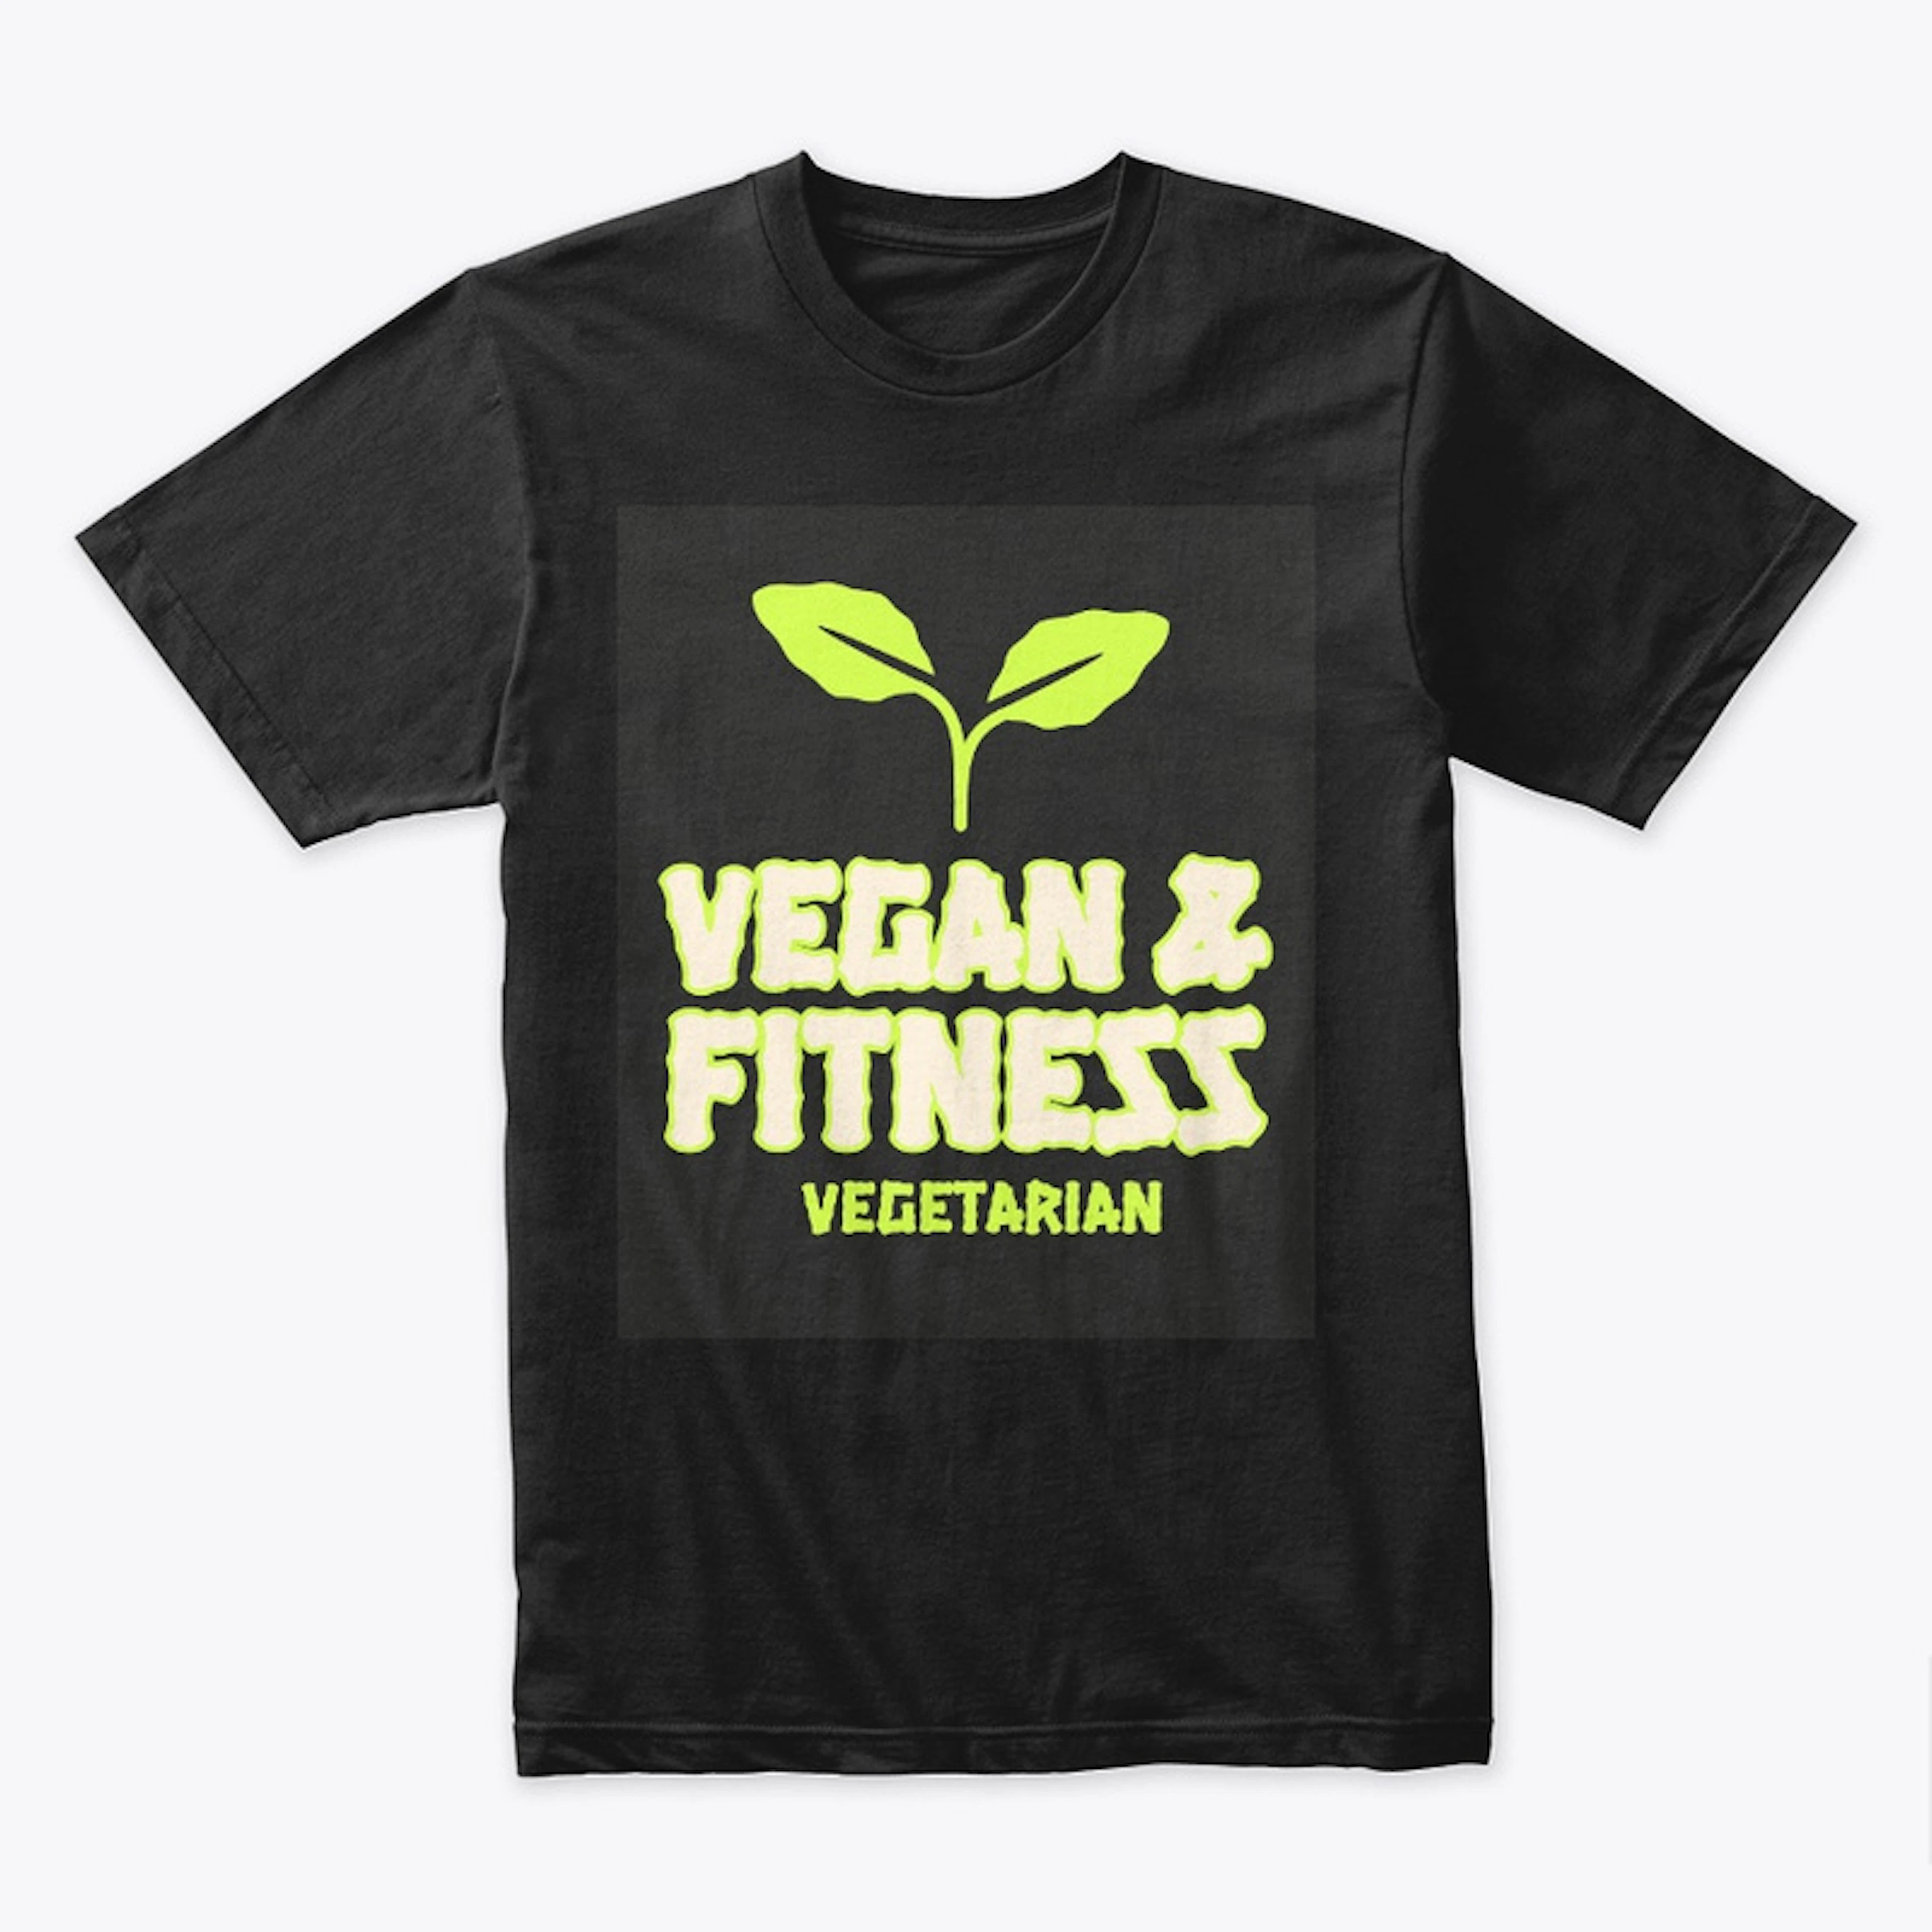 Vegan and Fitness Vegetarian